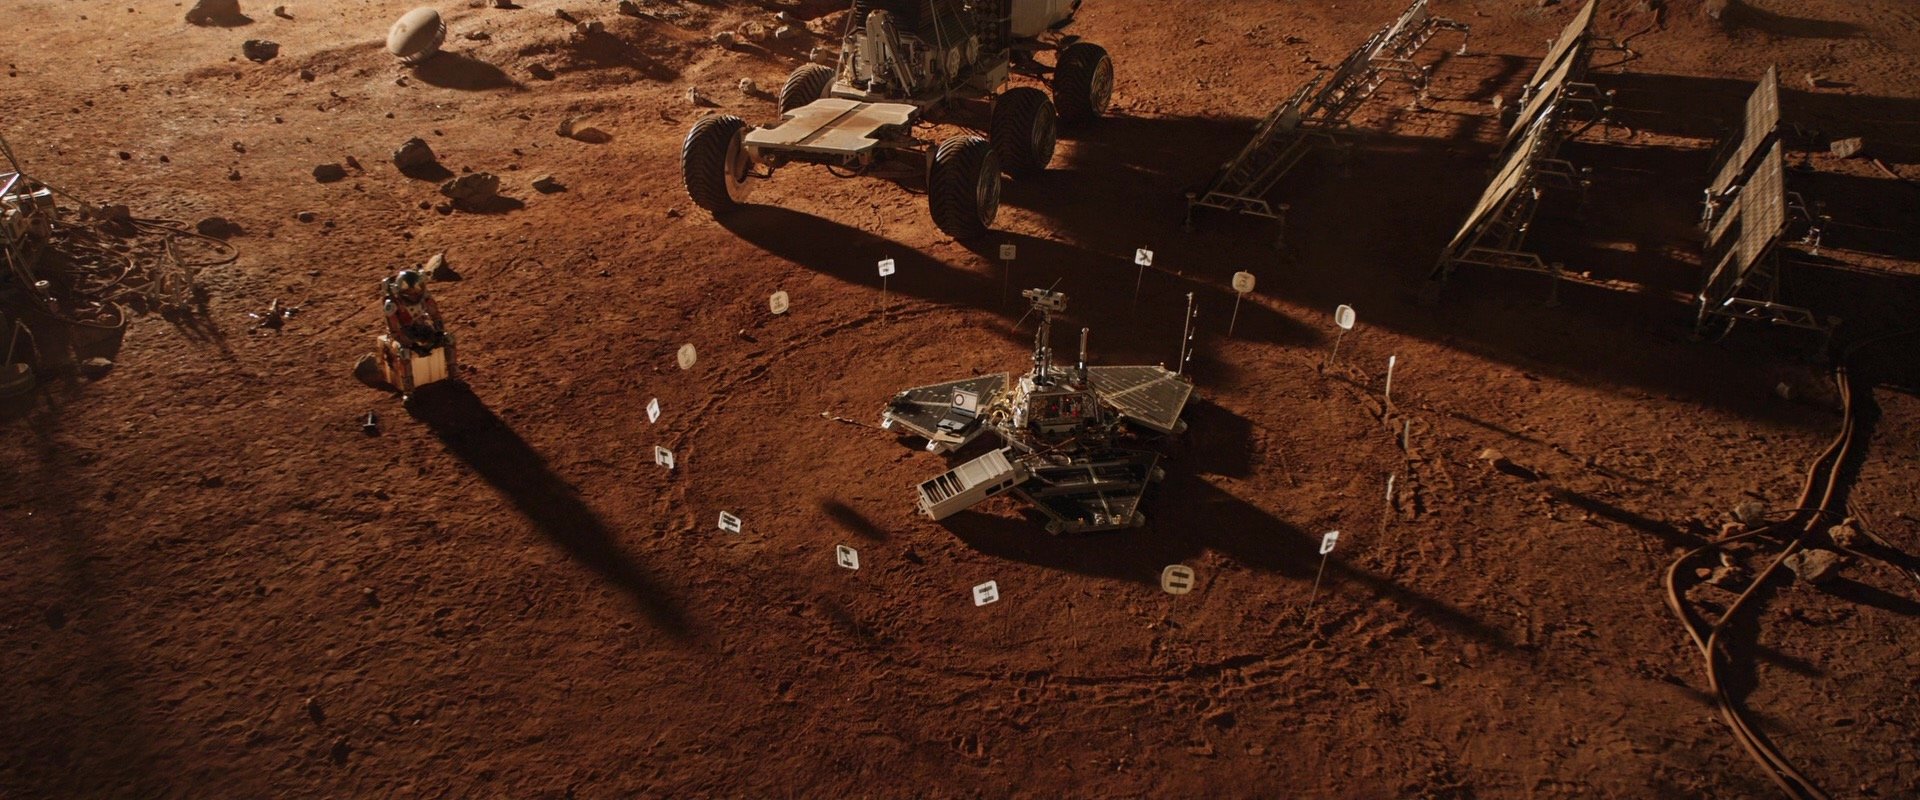 男主角通过火星探测器上一个可以旋转的摄像头与地球建立联系